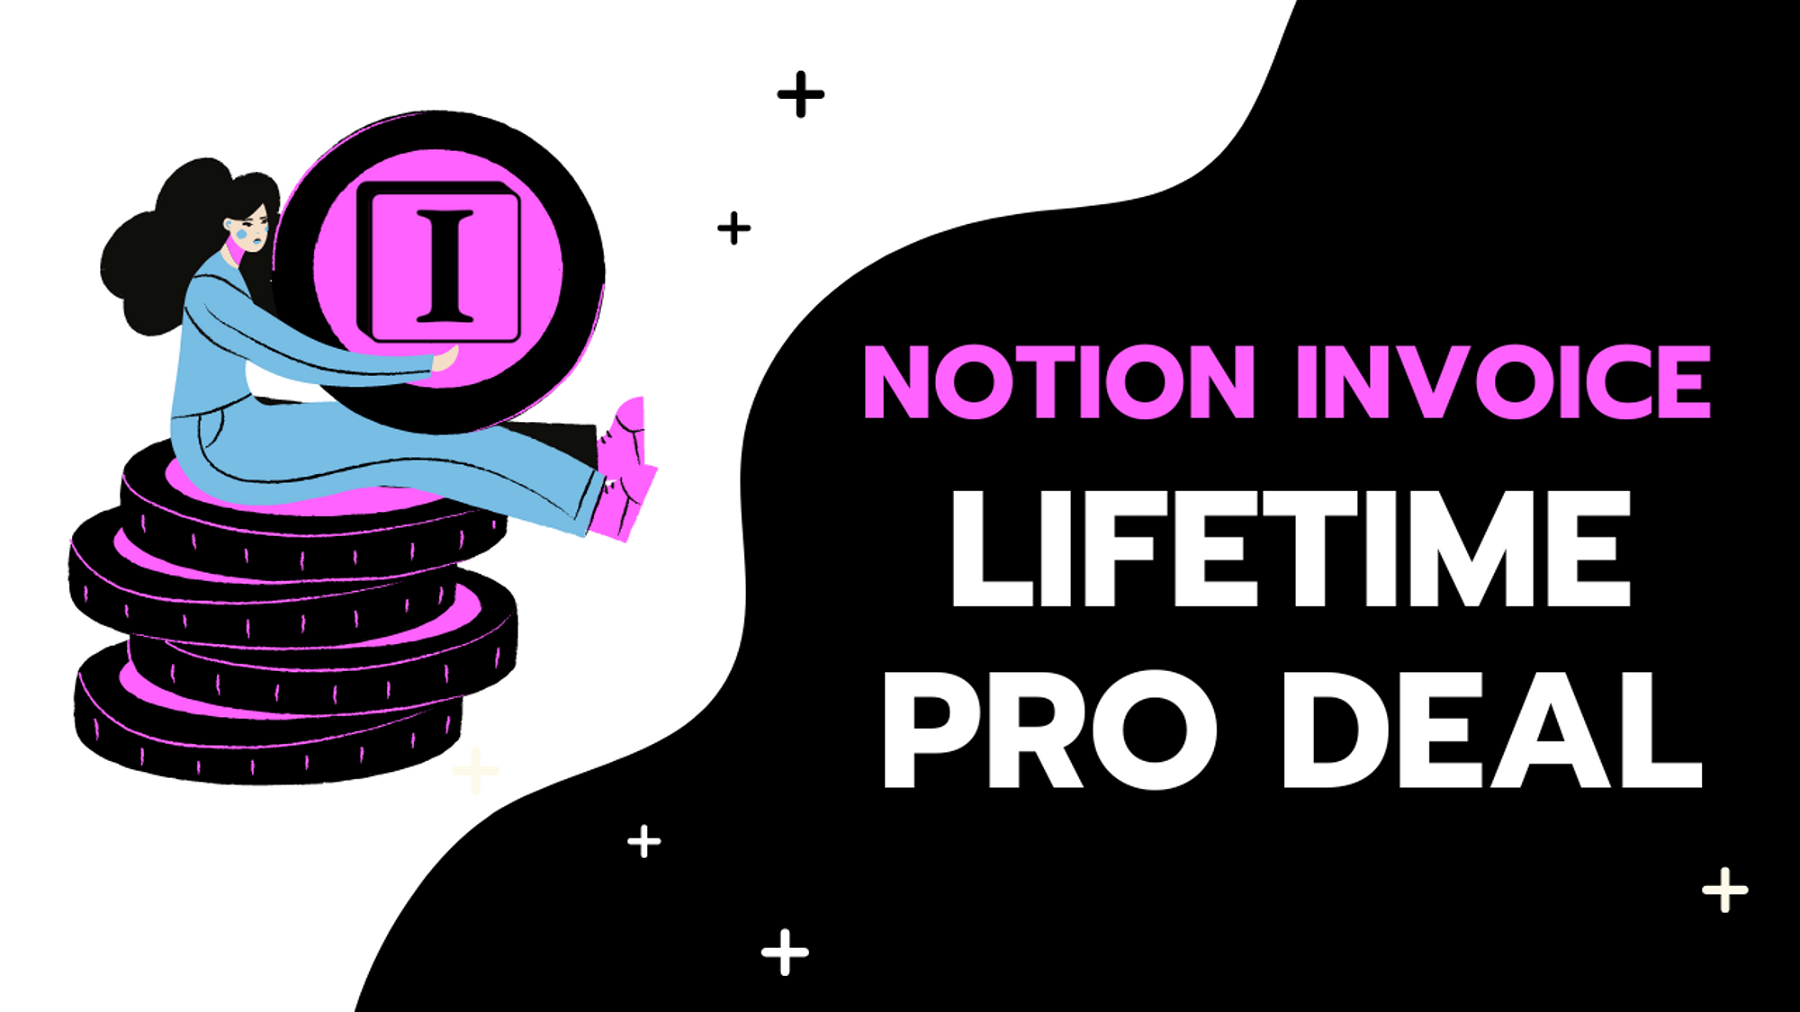 Notion Invoice: Lifetime Pro Deal